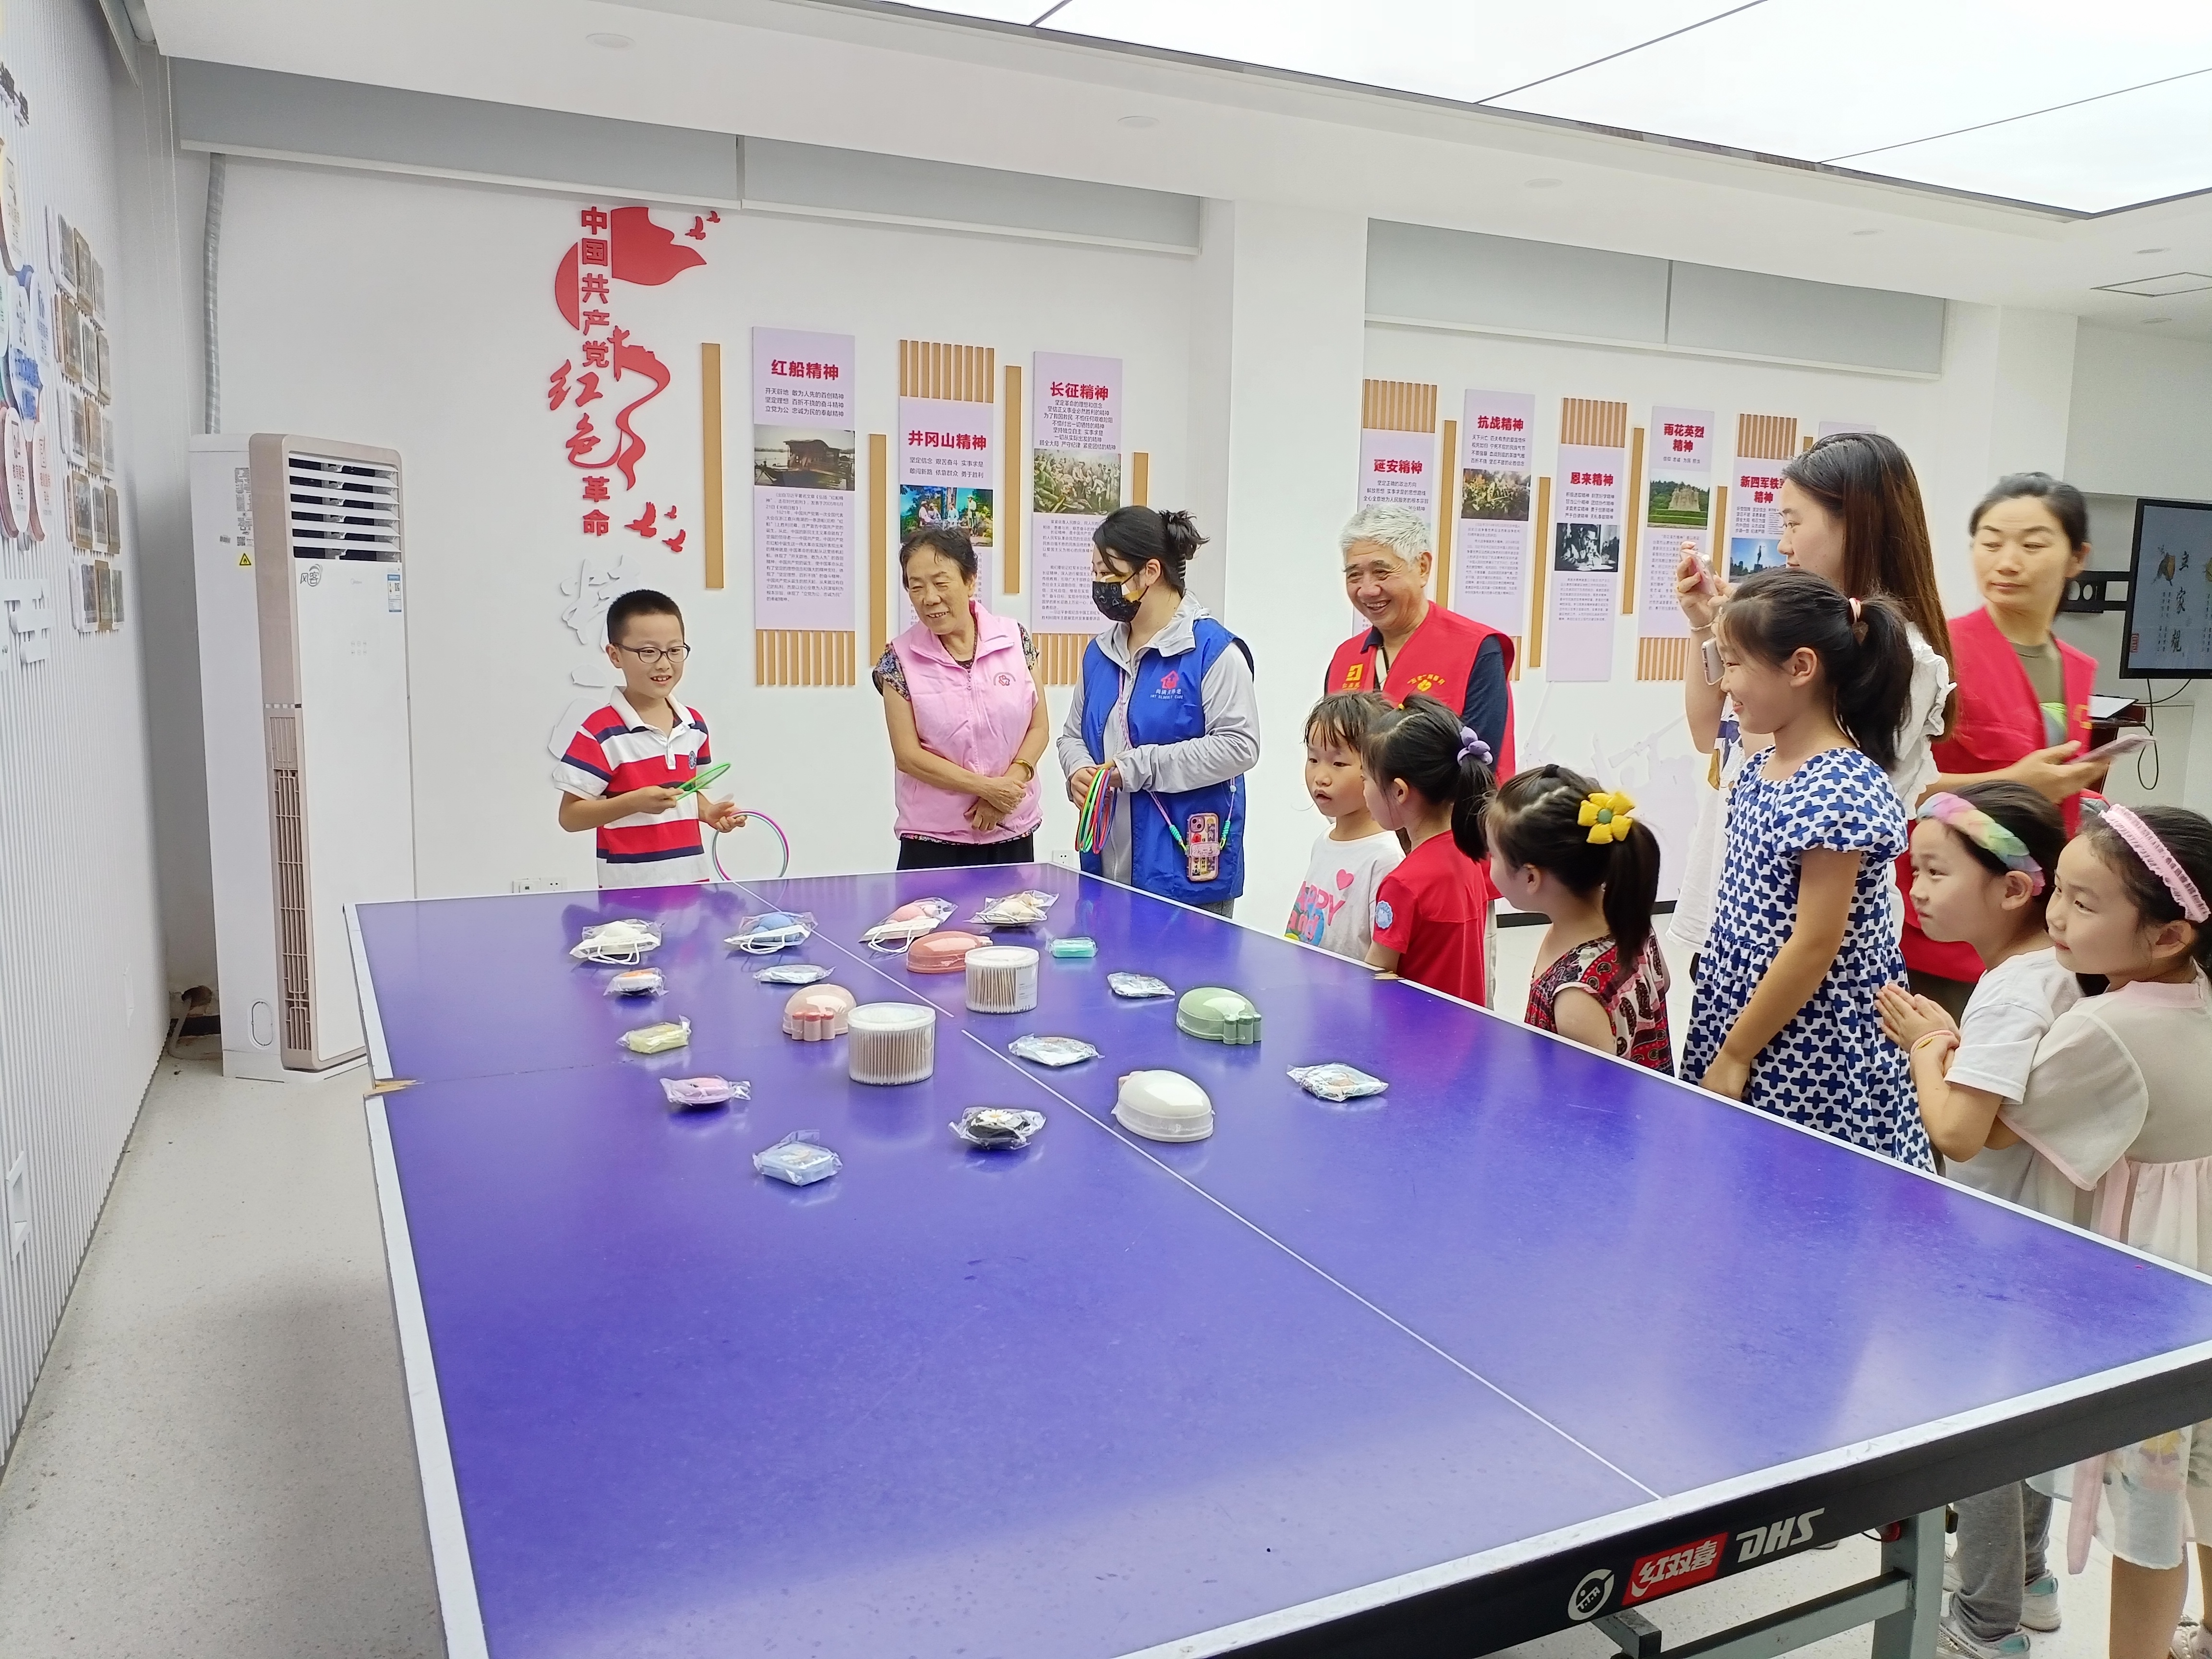 吉庆社区开展以“大暑三秋近 林钟九夏移 传承好家风 快乐暑期行”为主题的大暑节气活动